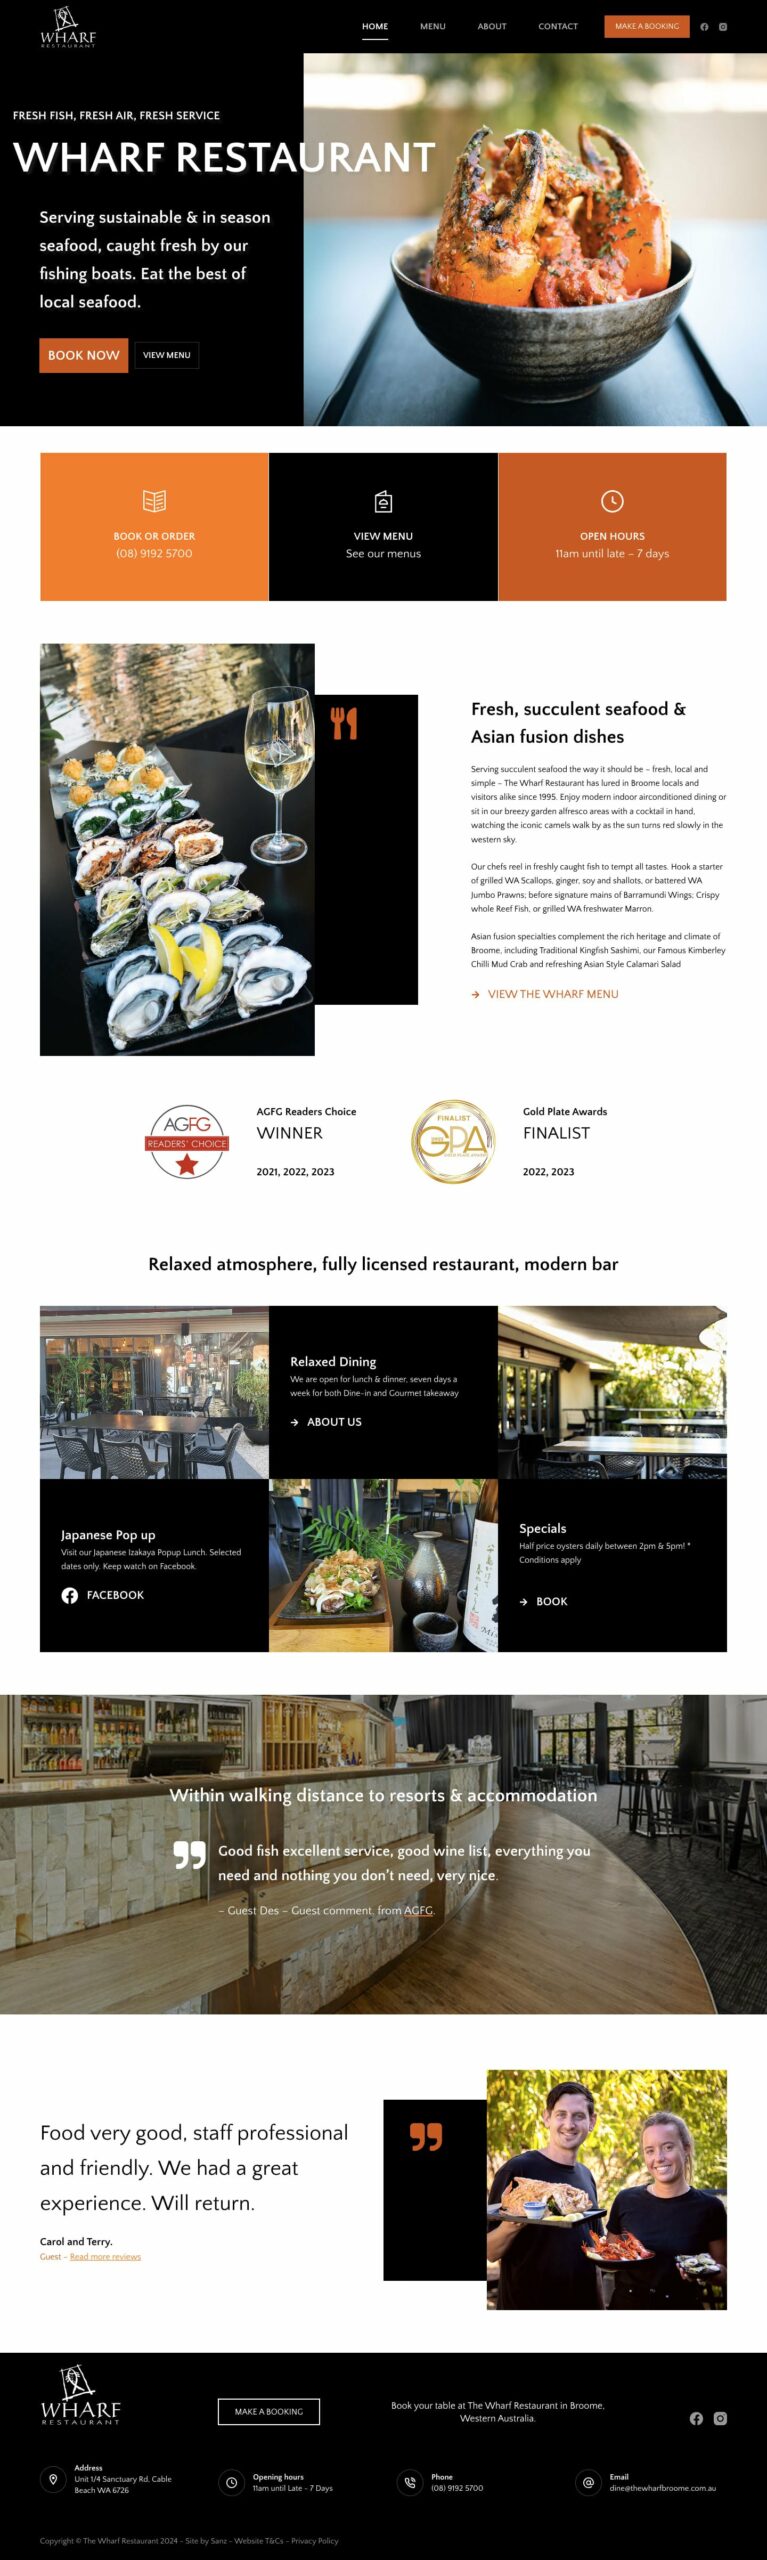 Wharf Restaurant website screenshot.